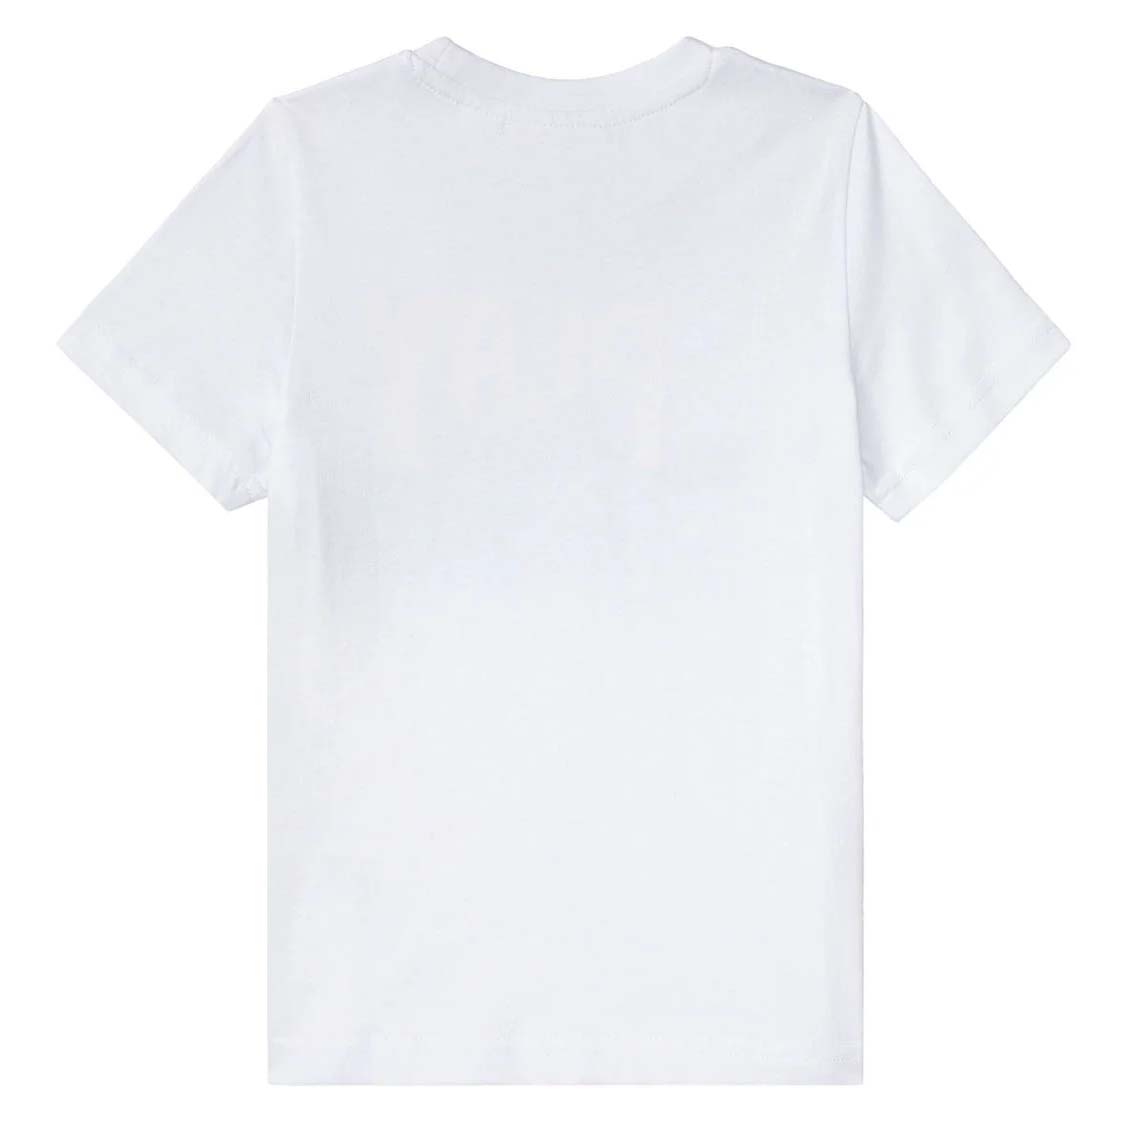 ست تی شرت و شلوارک پسرانه پاو پاترول مدل 2024 -  - 3